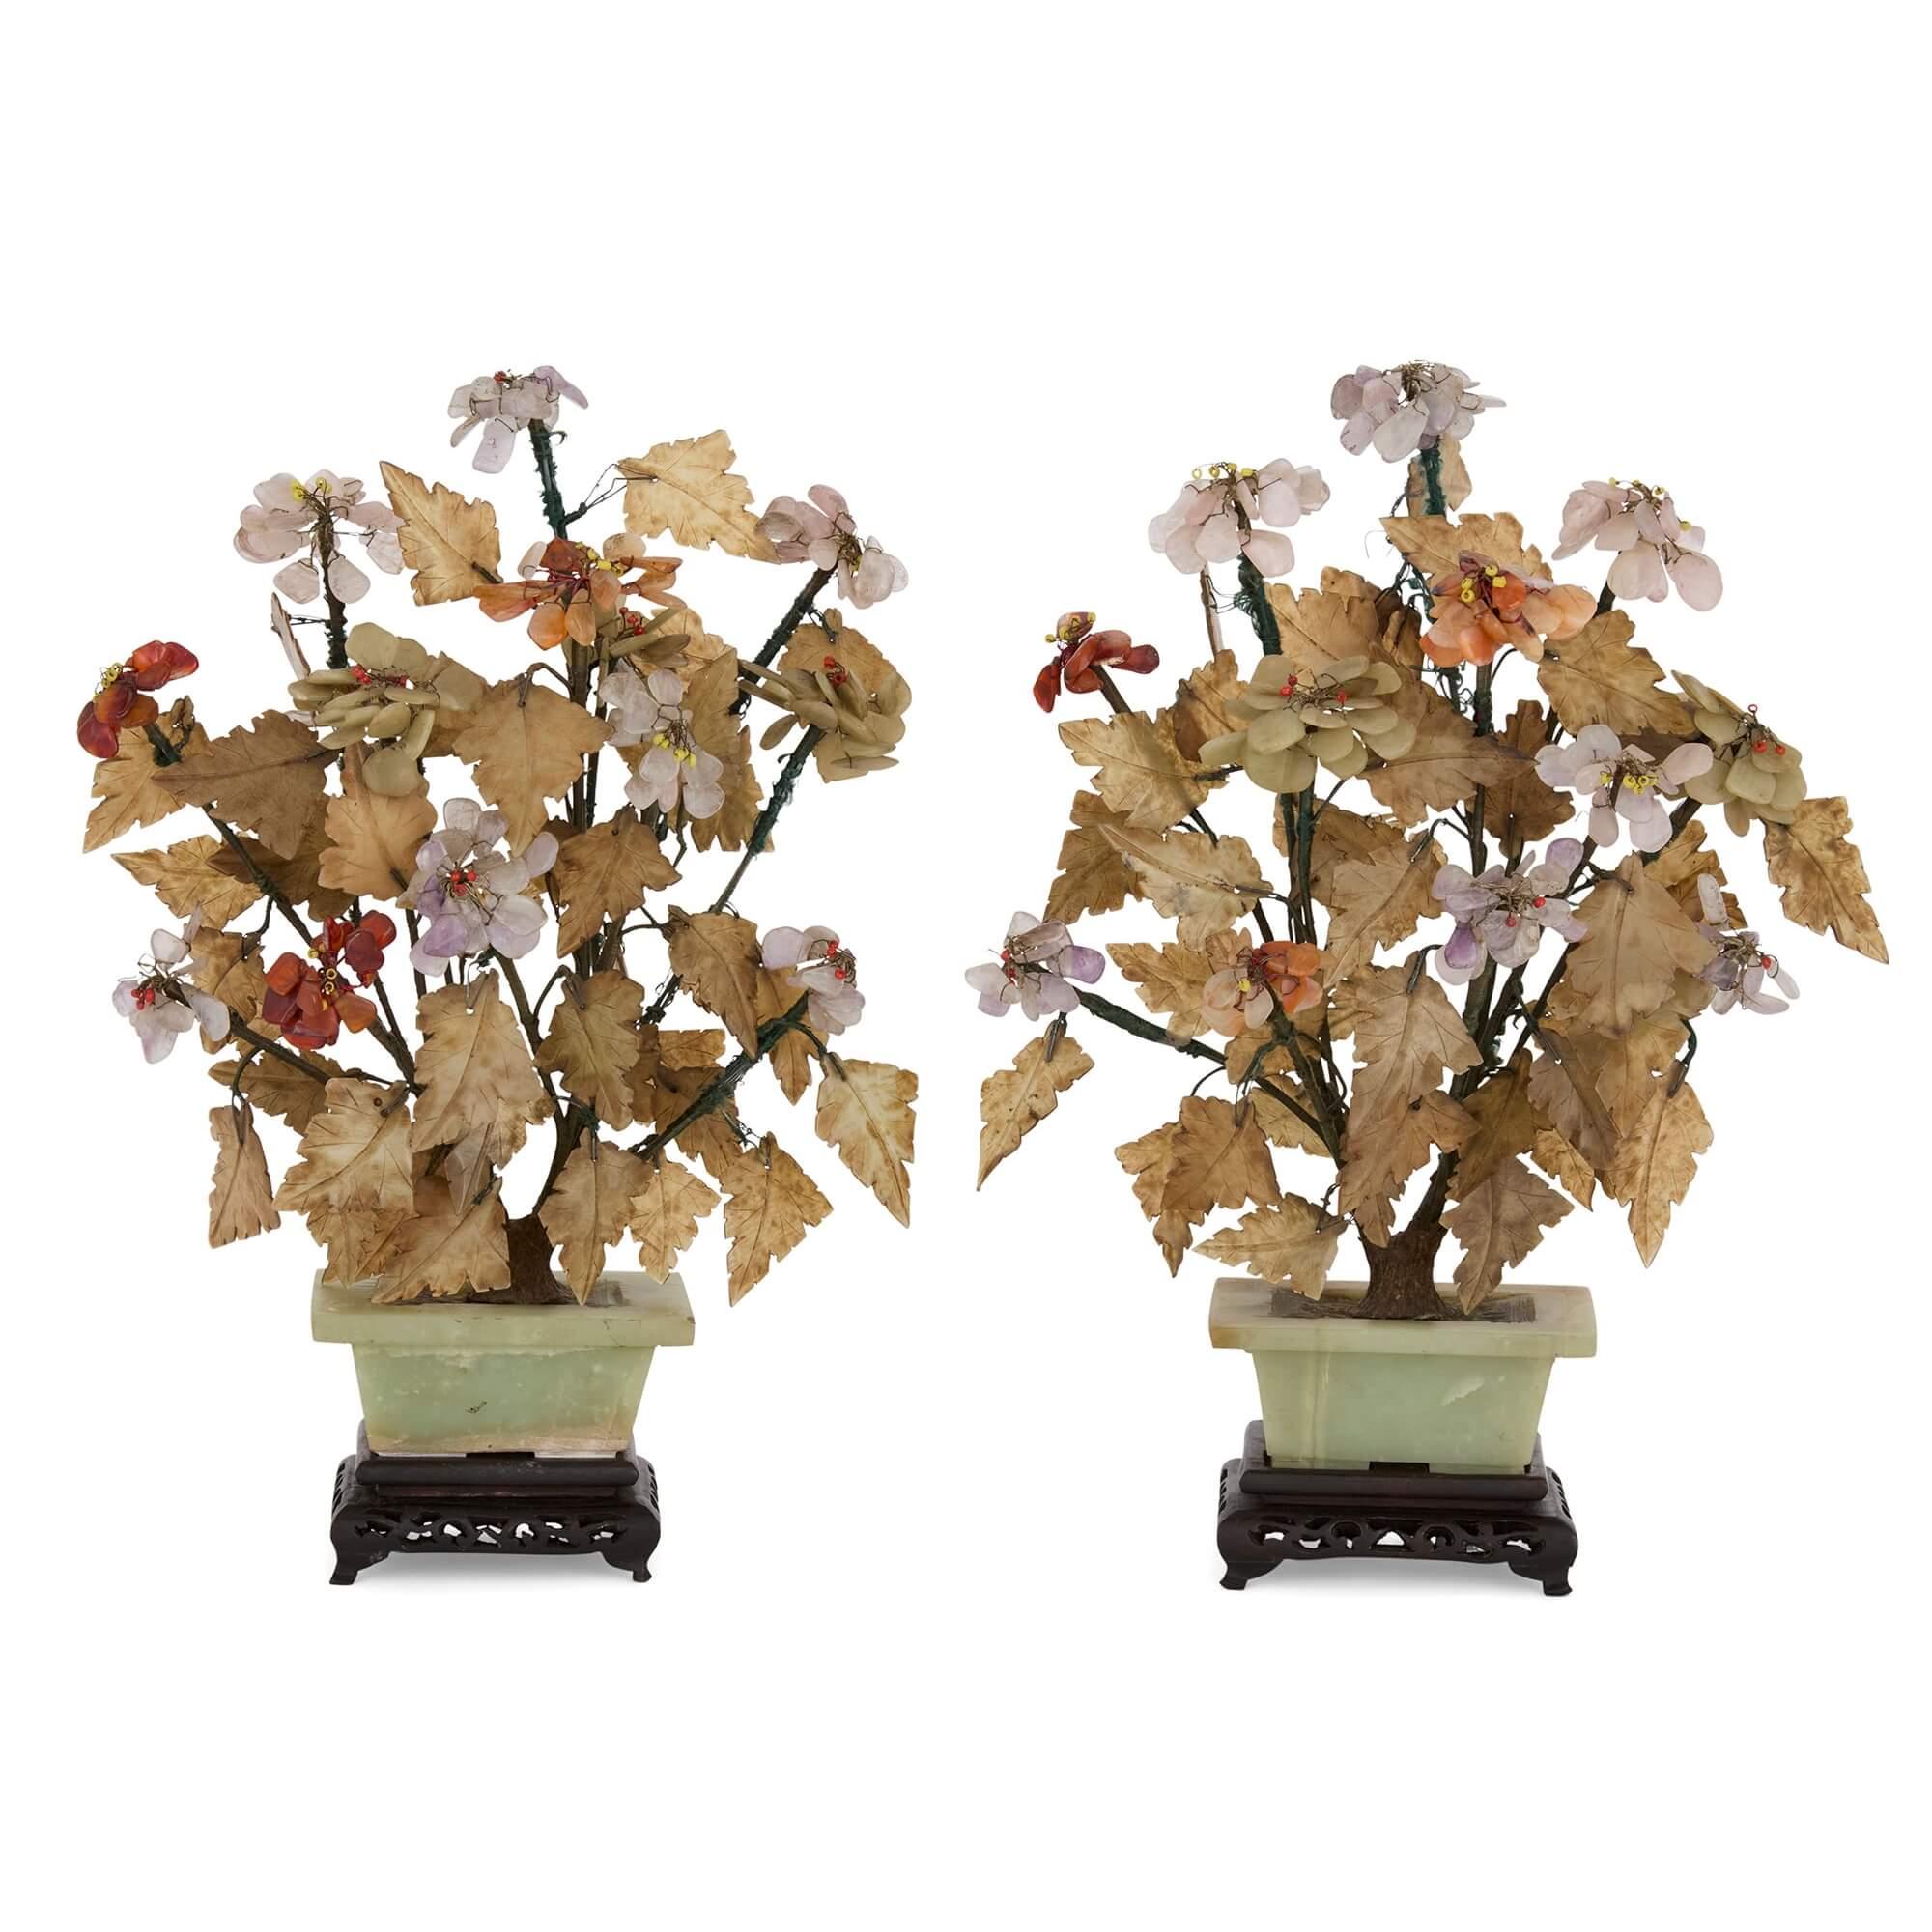 Paire de modèles de fleurs chinoises en pierre dure et jade
Chinois, 20e siècle 
Hauteur 33cm, largeur 25cm, profondeur 17cm 

Cette superbe paire de modèles de fleurs en pierre dure est presque identique dans sa conception, comprenant des arbres en